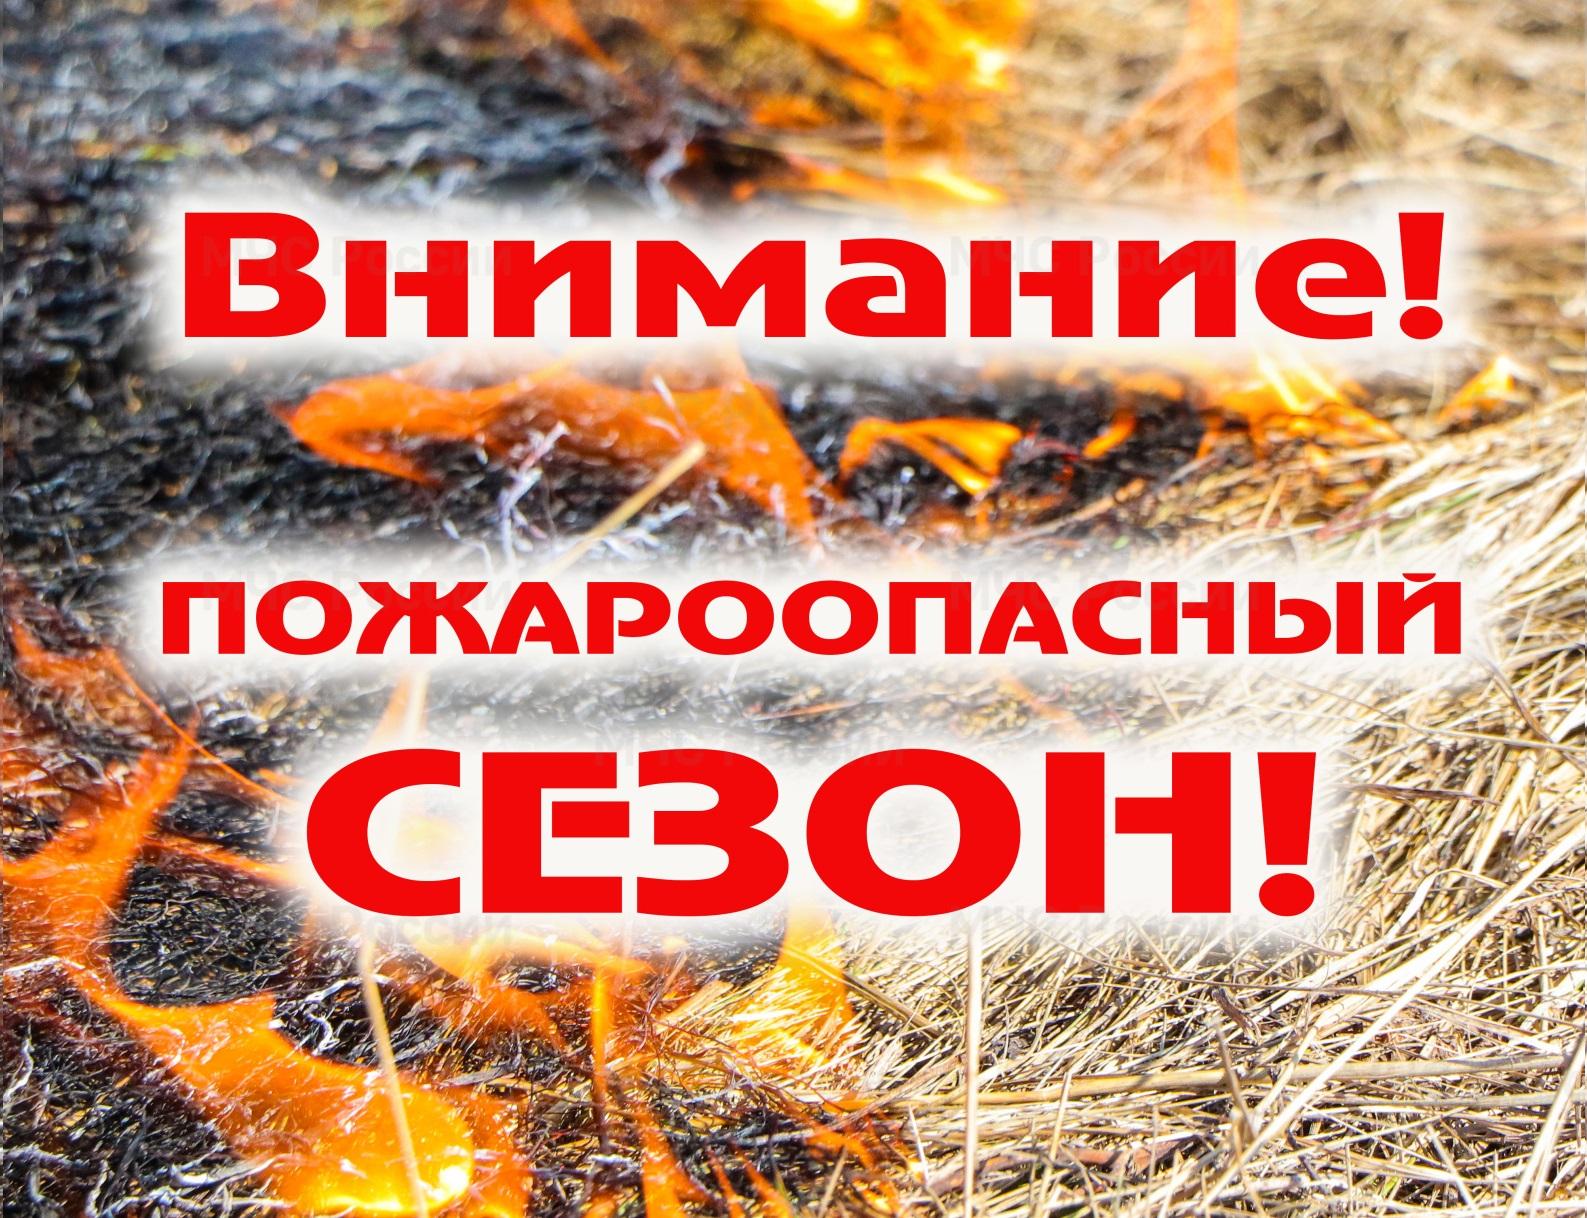 Администрация района информирует о пожароопасном сезоне..